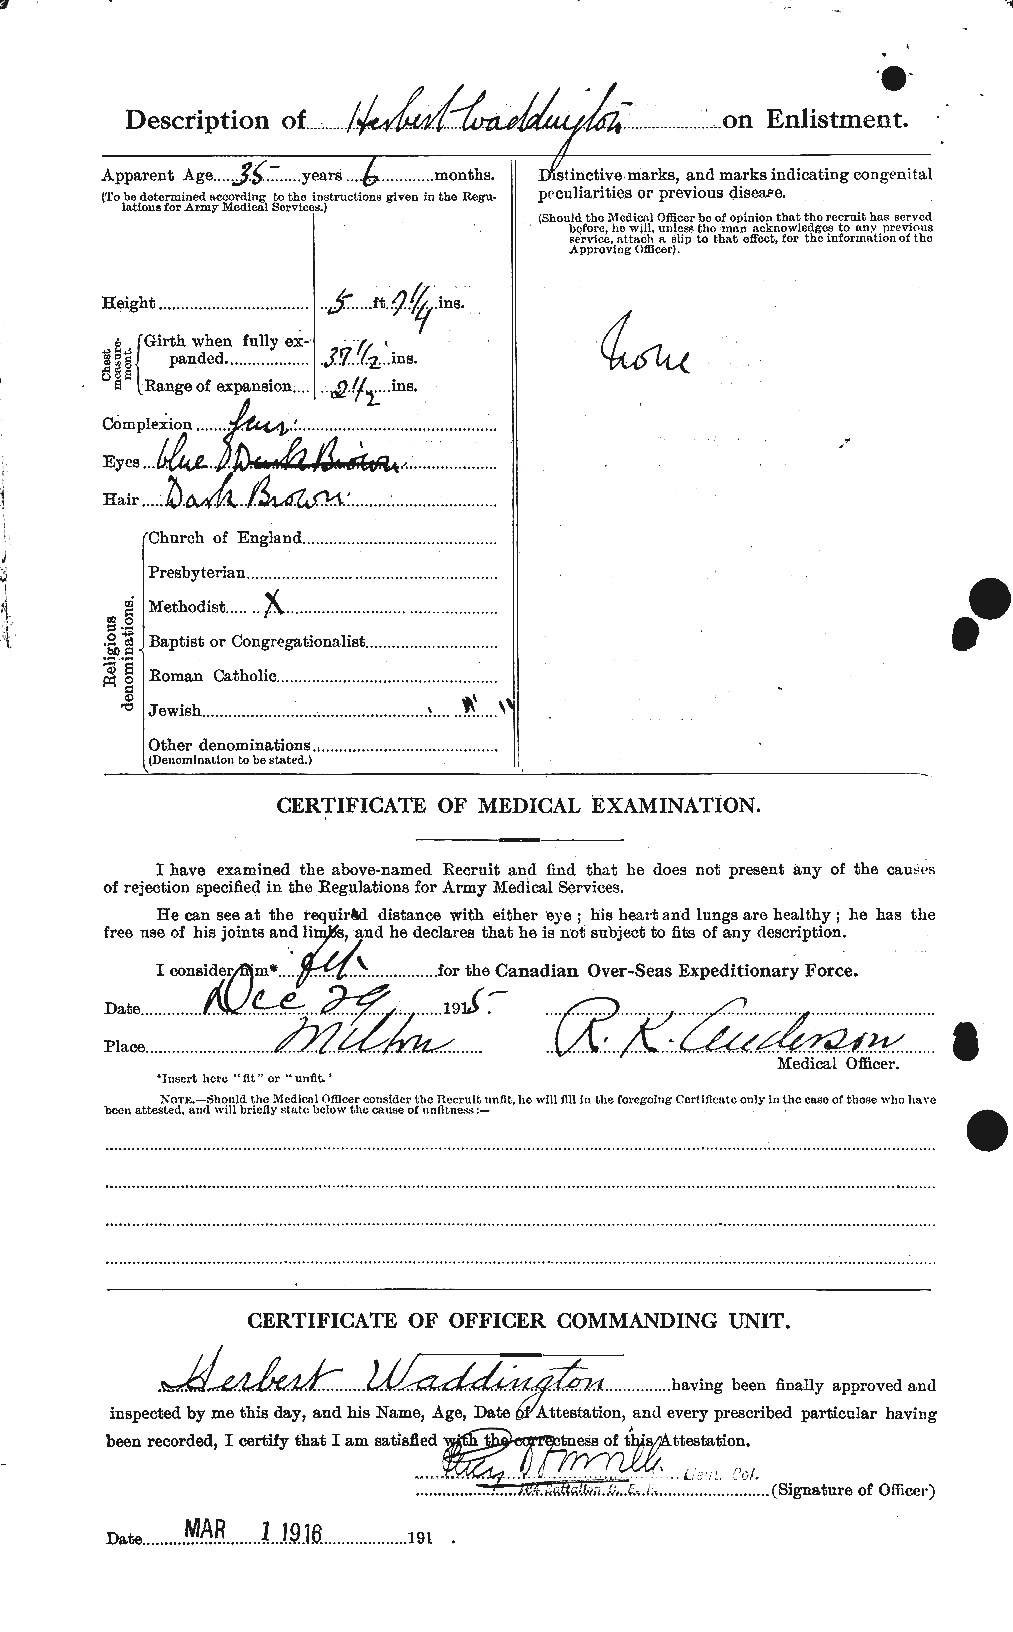 Dossiers du Personnel de la Première Guerre mondiale - CEC 649943b